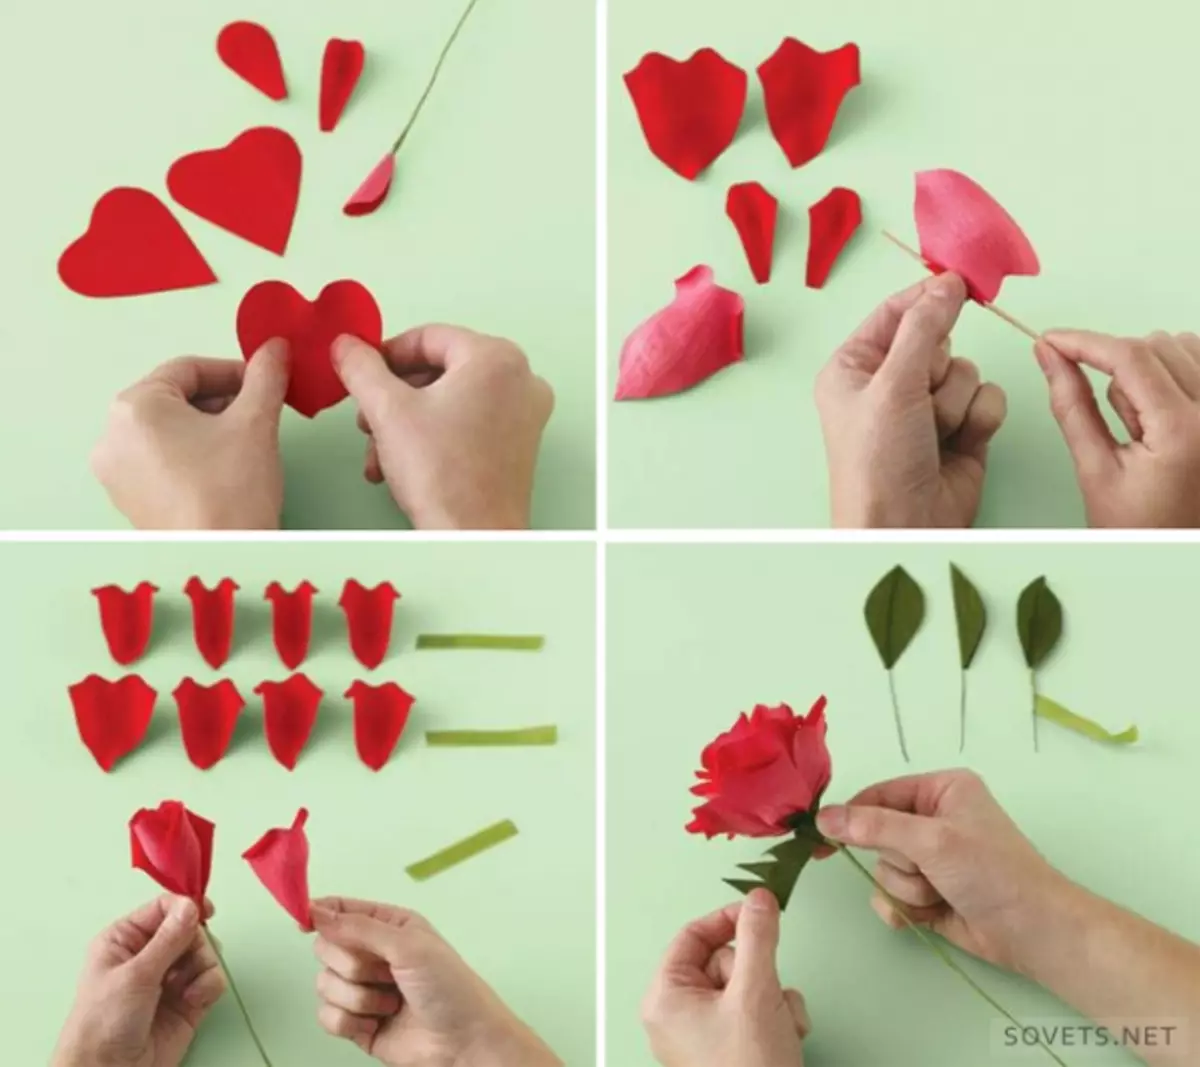 Kak sdelat ru. Поделка из цветной бумаги розы пошагово. Как сделать розу из бумаги. Цветы из бумаги лёгкие и красивые. Цветы из бумаги легкие для детей.